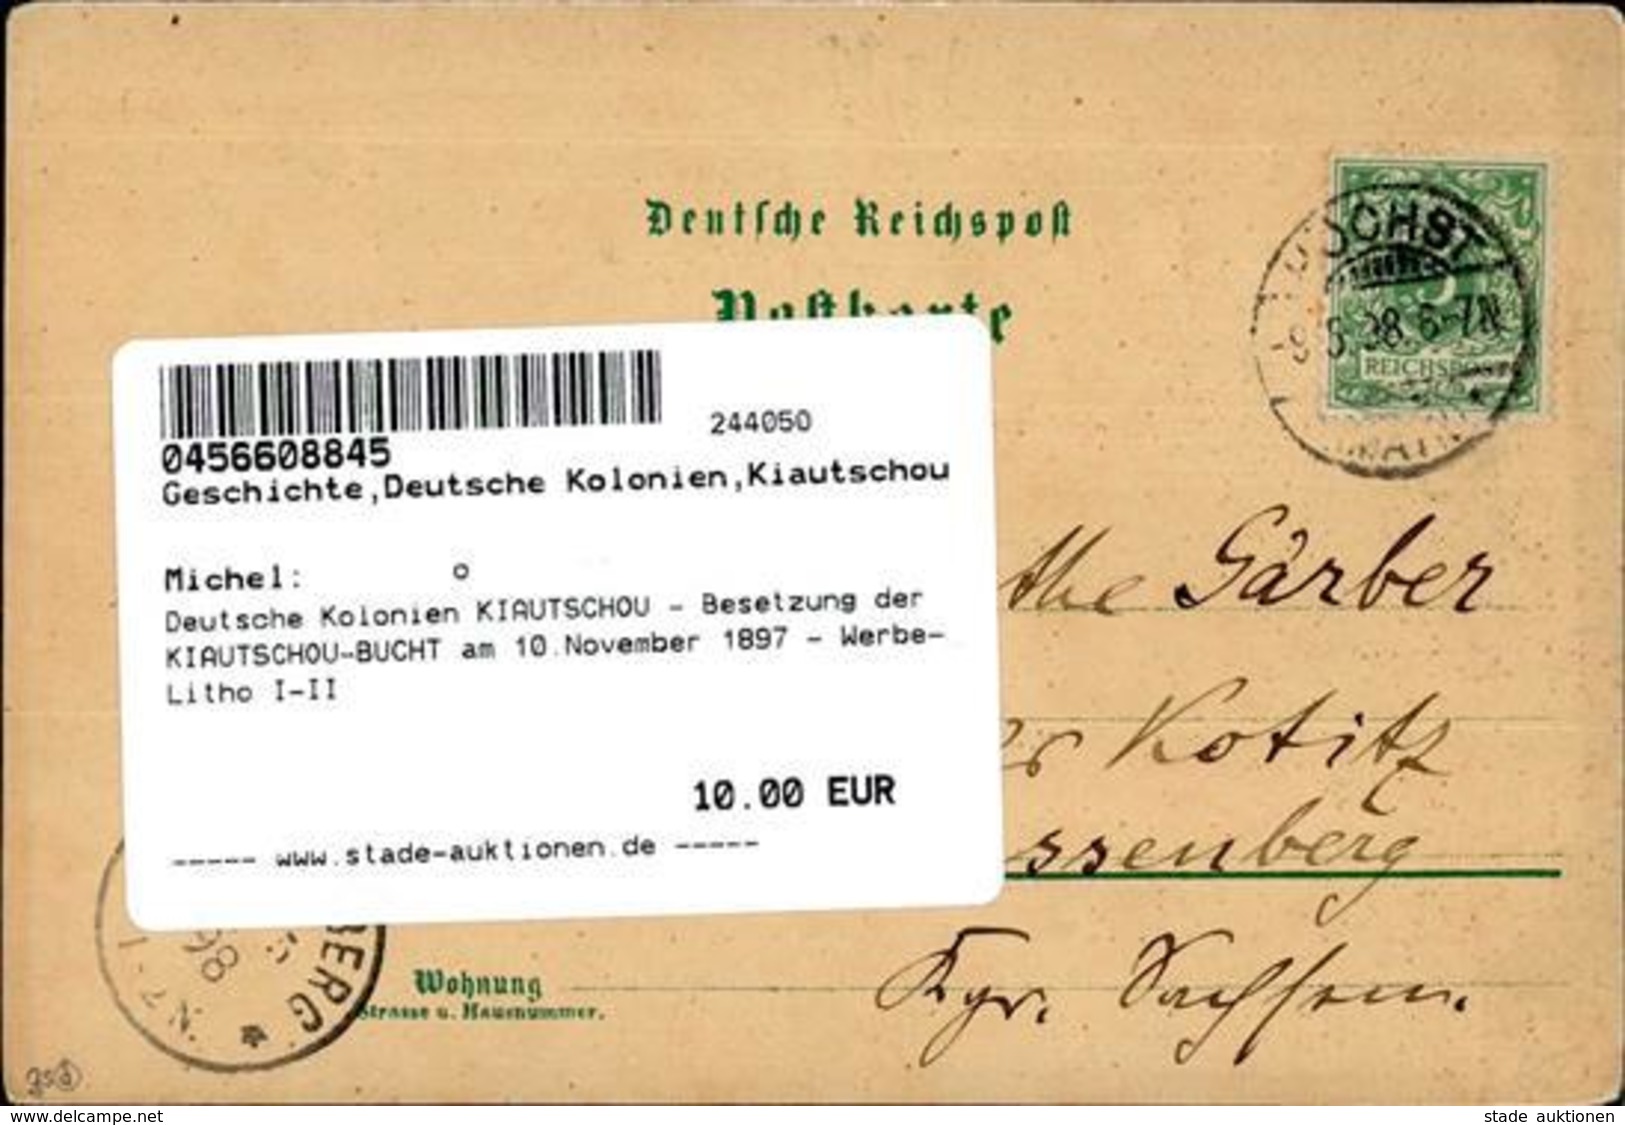 Deutsche Kolonien KIAUTSCHOU - Besetzung Der KIAUTSCHOU-BUCHT Am 10.November 1897 - Werbe-Litho I-II Colonies - Sin Clasificación